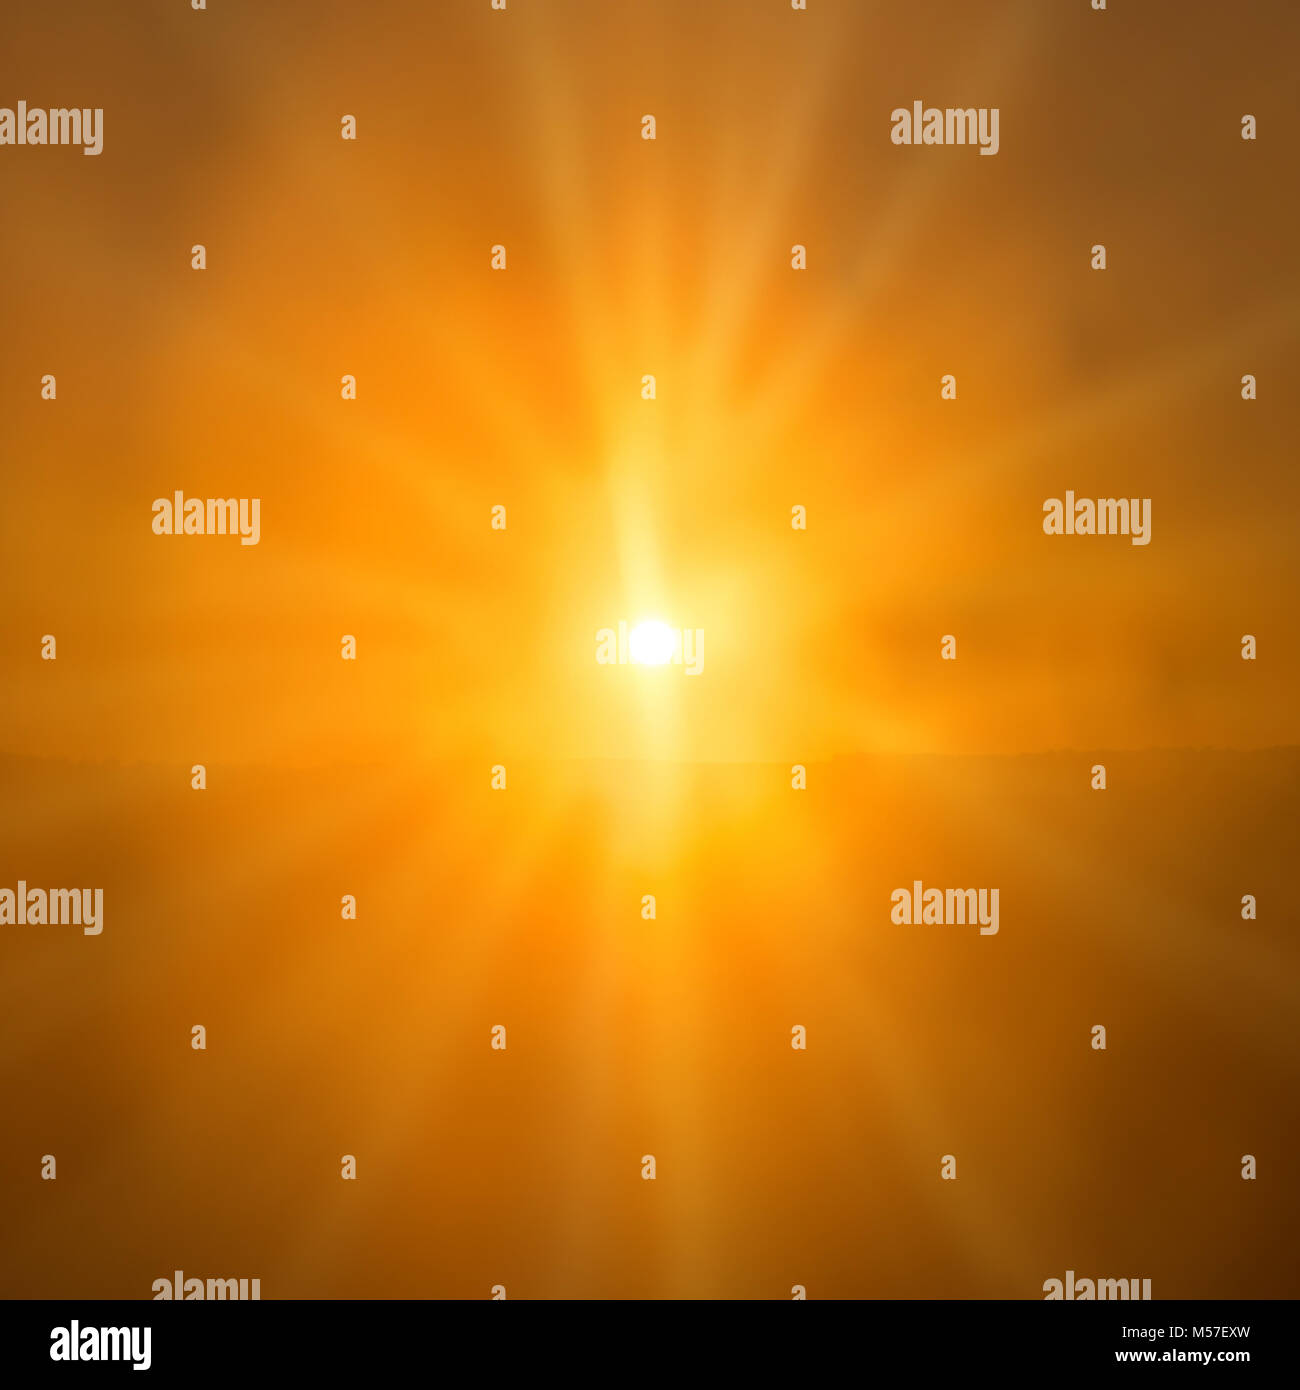 Abstract sunset- shining orange sun Stock Photo